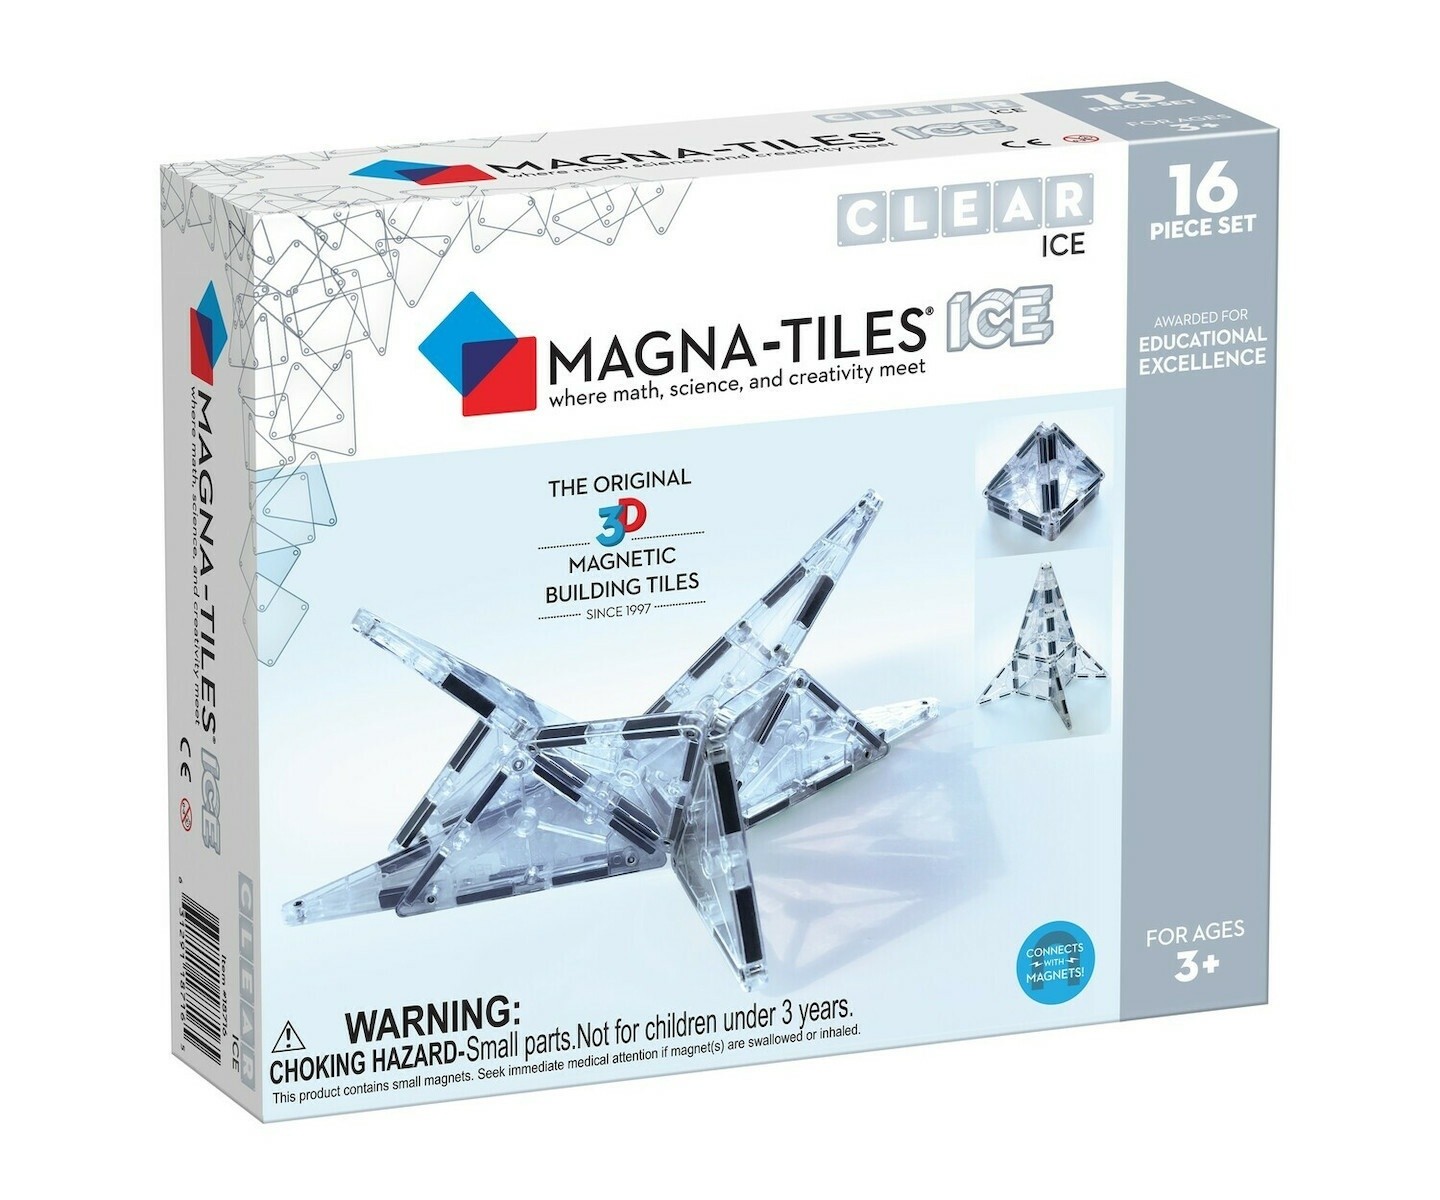 Μαγνητικά Πλακίδια ICE 16τμχ, Magna-Tiles